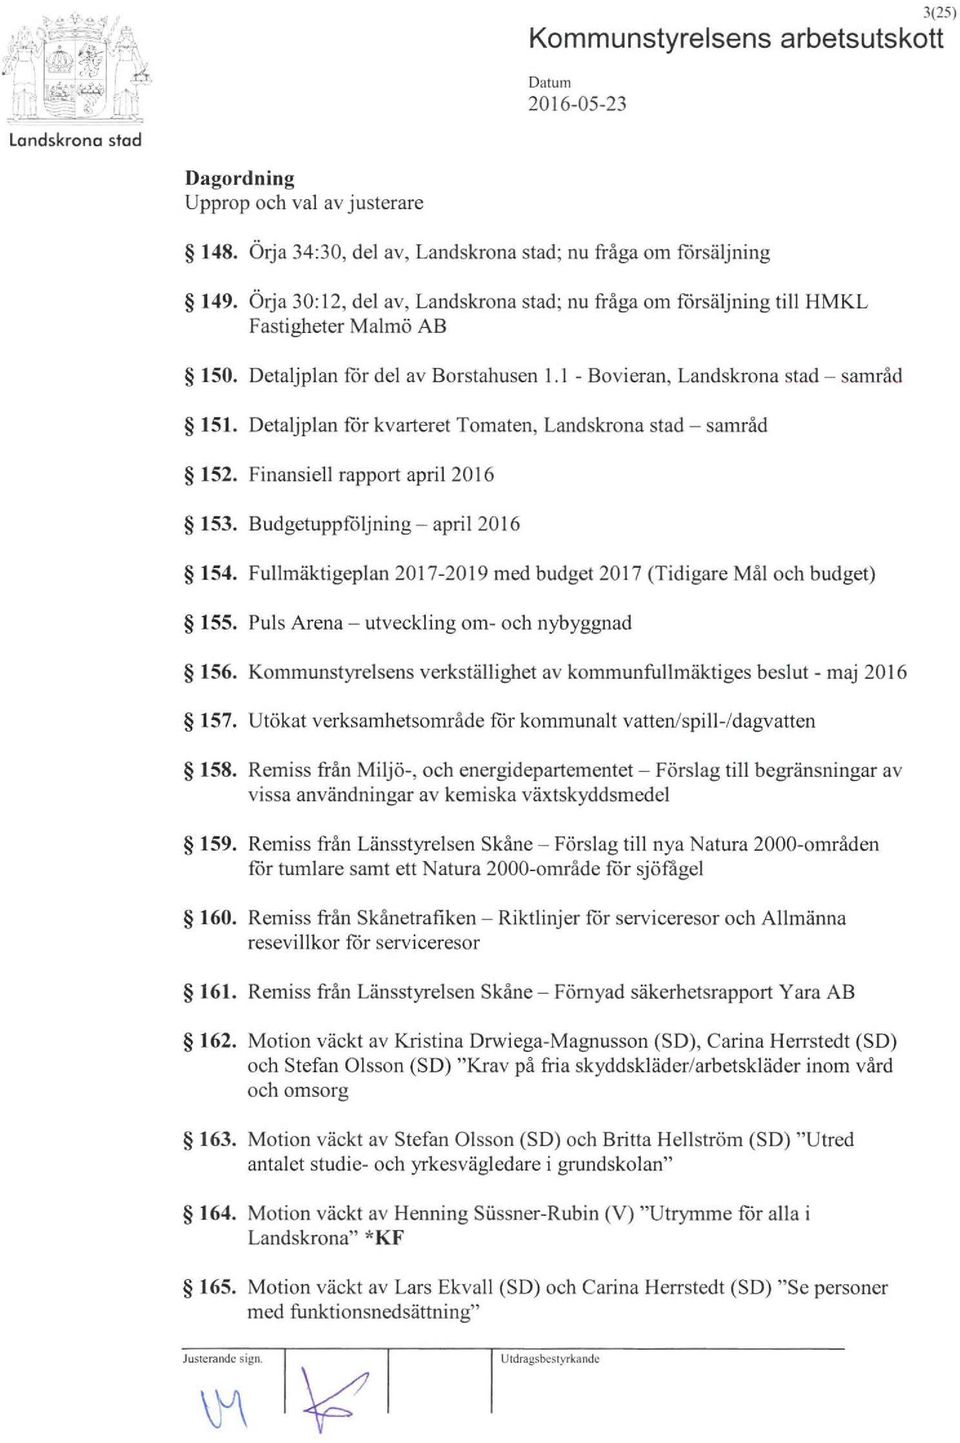 Detaljplan for kvarteret Tomaten, Landskrona stad - samråd 152. Finansiell rapport april 2016 153. Budgetuppfoljning - april 2016 154.